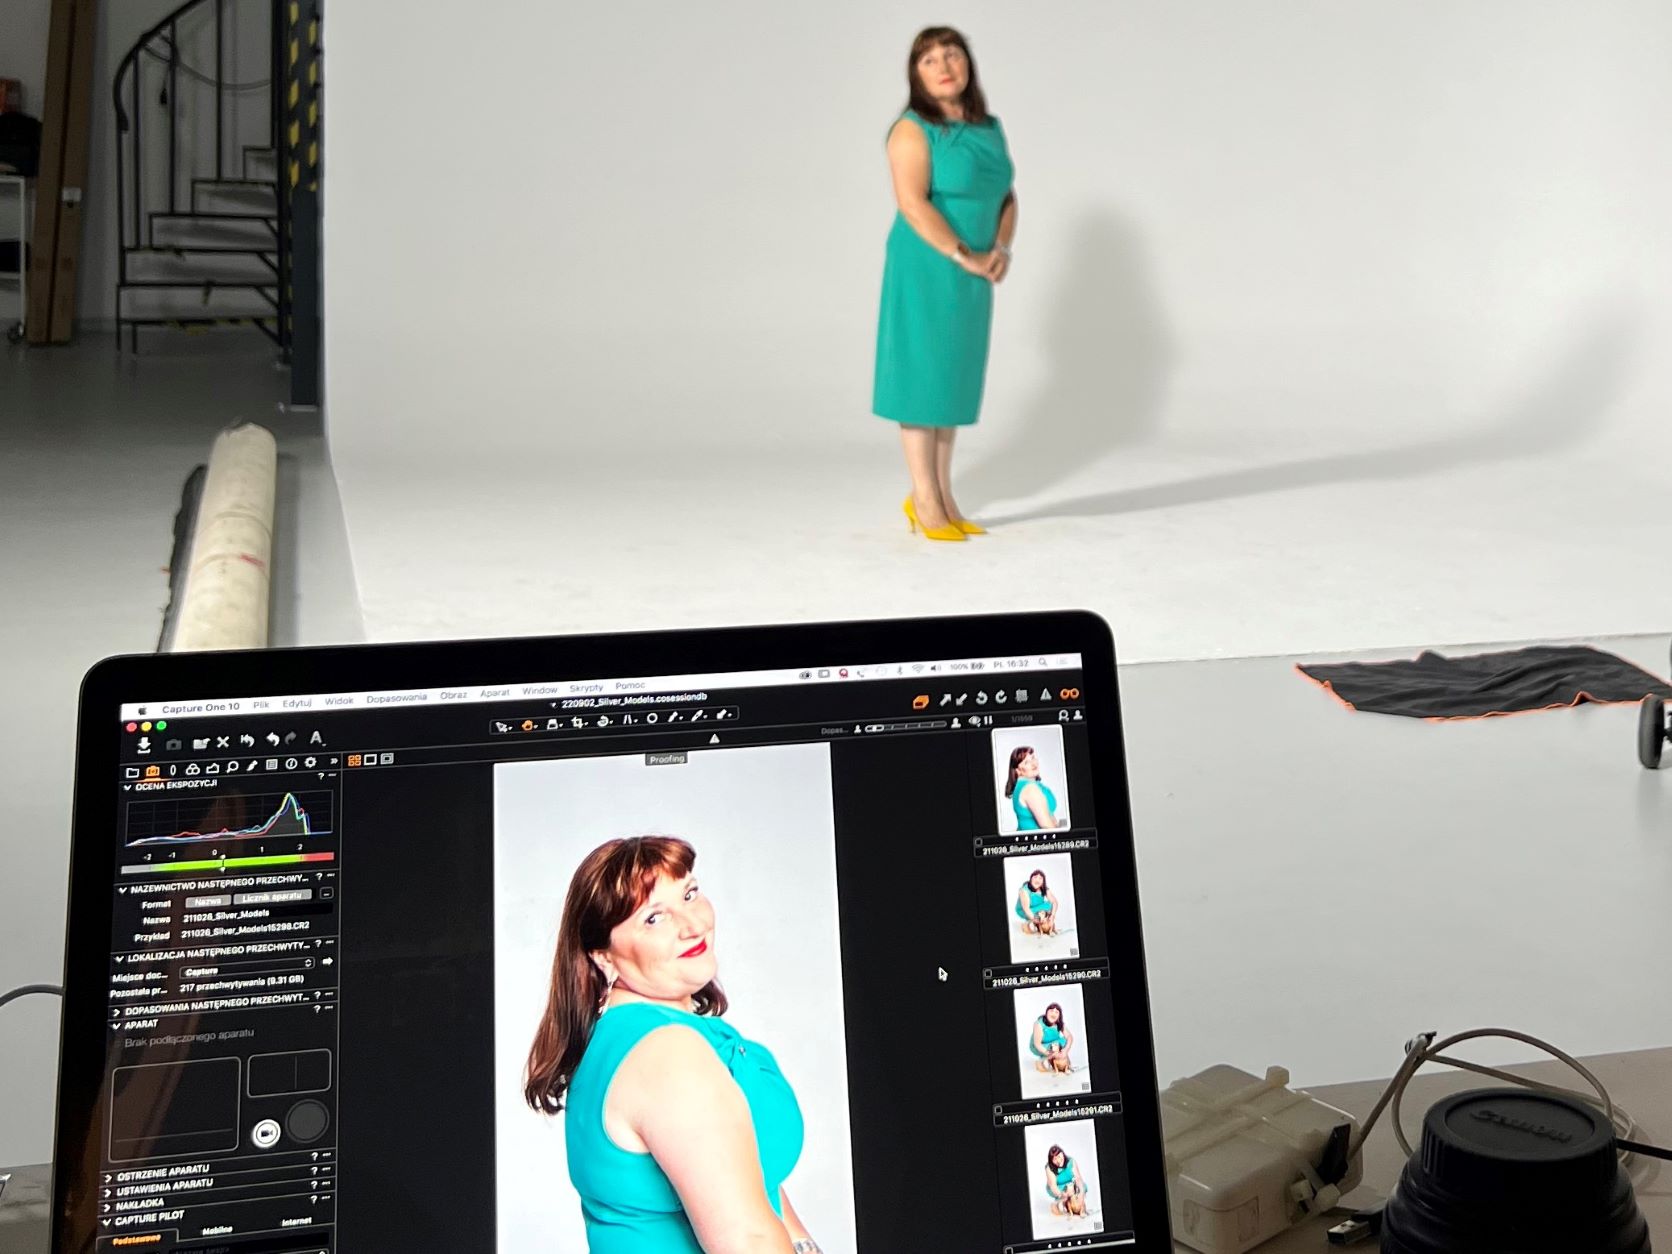 Agencja Silver Models sesja zdjęciowa z modelką 50+ ubraną w niebieską sukienkę